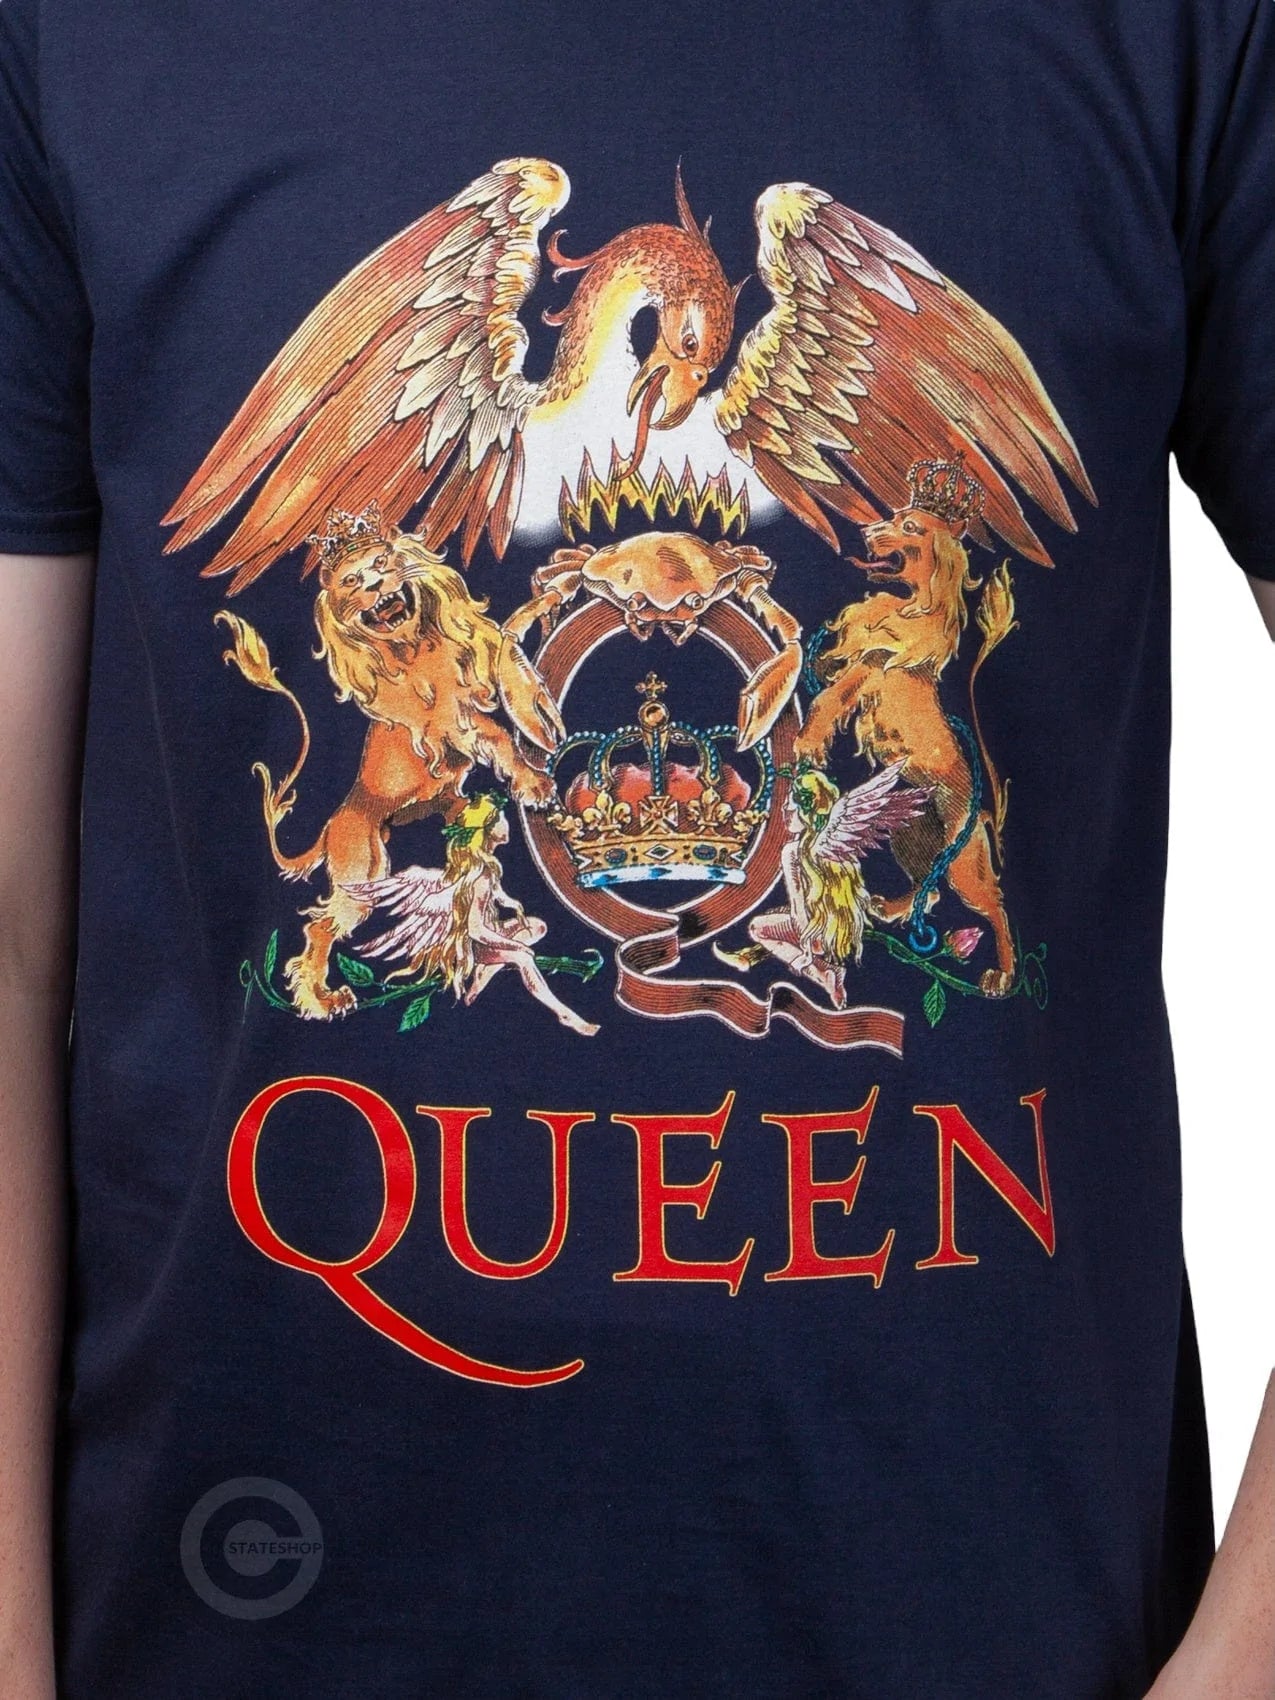 T-shirt Queen 